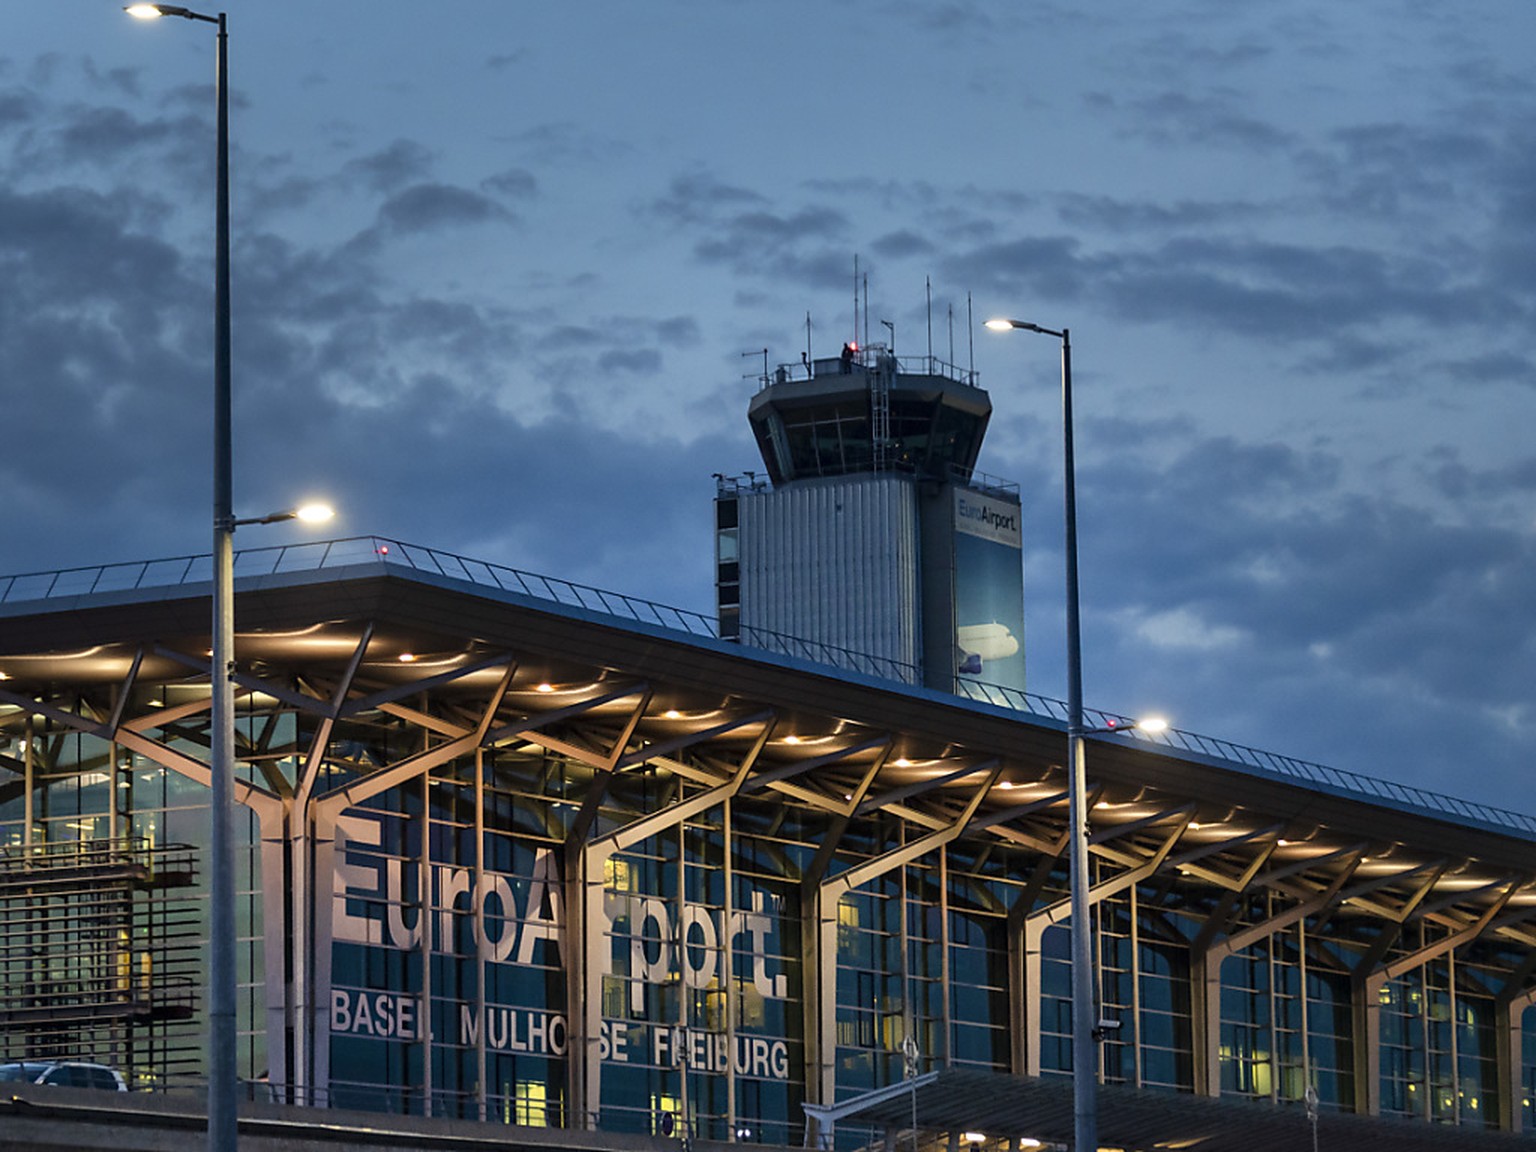 Der Euroairport Basel-M